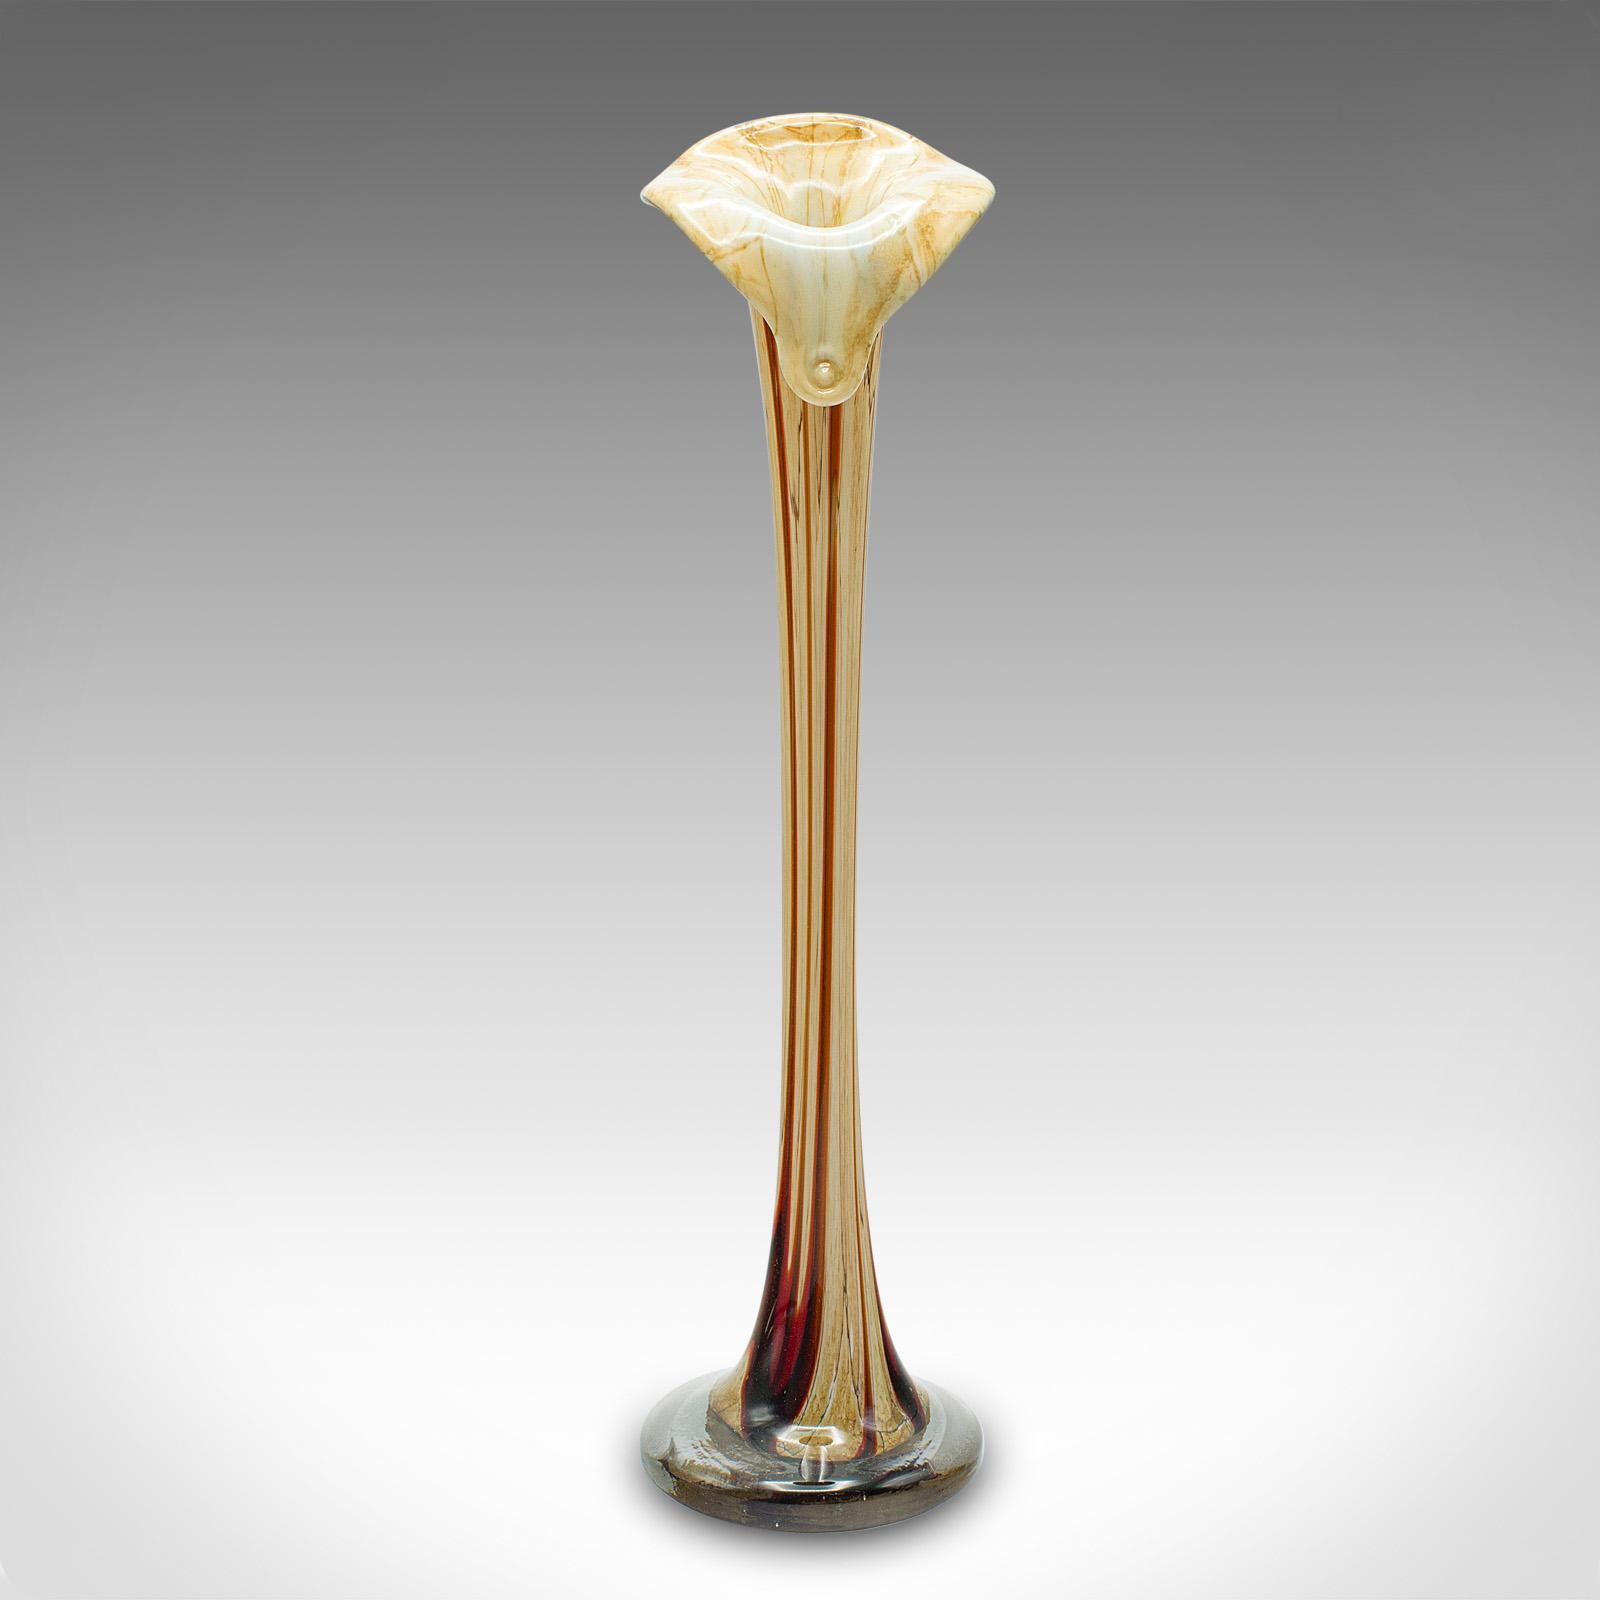 Dies ist eine hohe Vintage-Vase mit schlankem Stiel. Eine italienische Blumenmanschette aus Murano-Glas aus der Mitte des Jahrhunderts, ca. 1960.

Faszinierende Form der Lilie mit einer unverwechselbaren Farbpalette
Zeigt eine wünschenswerte